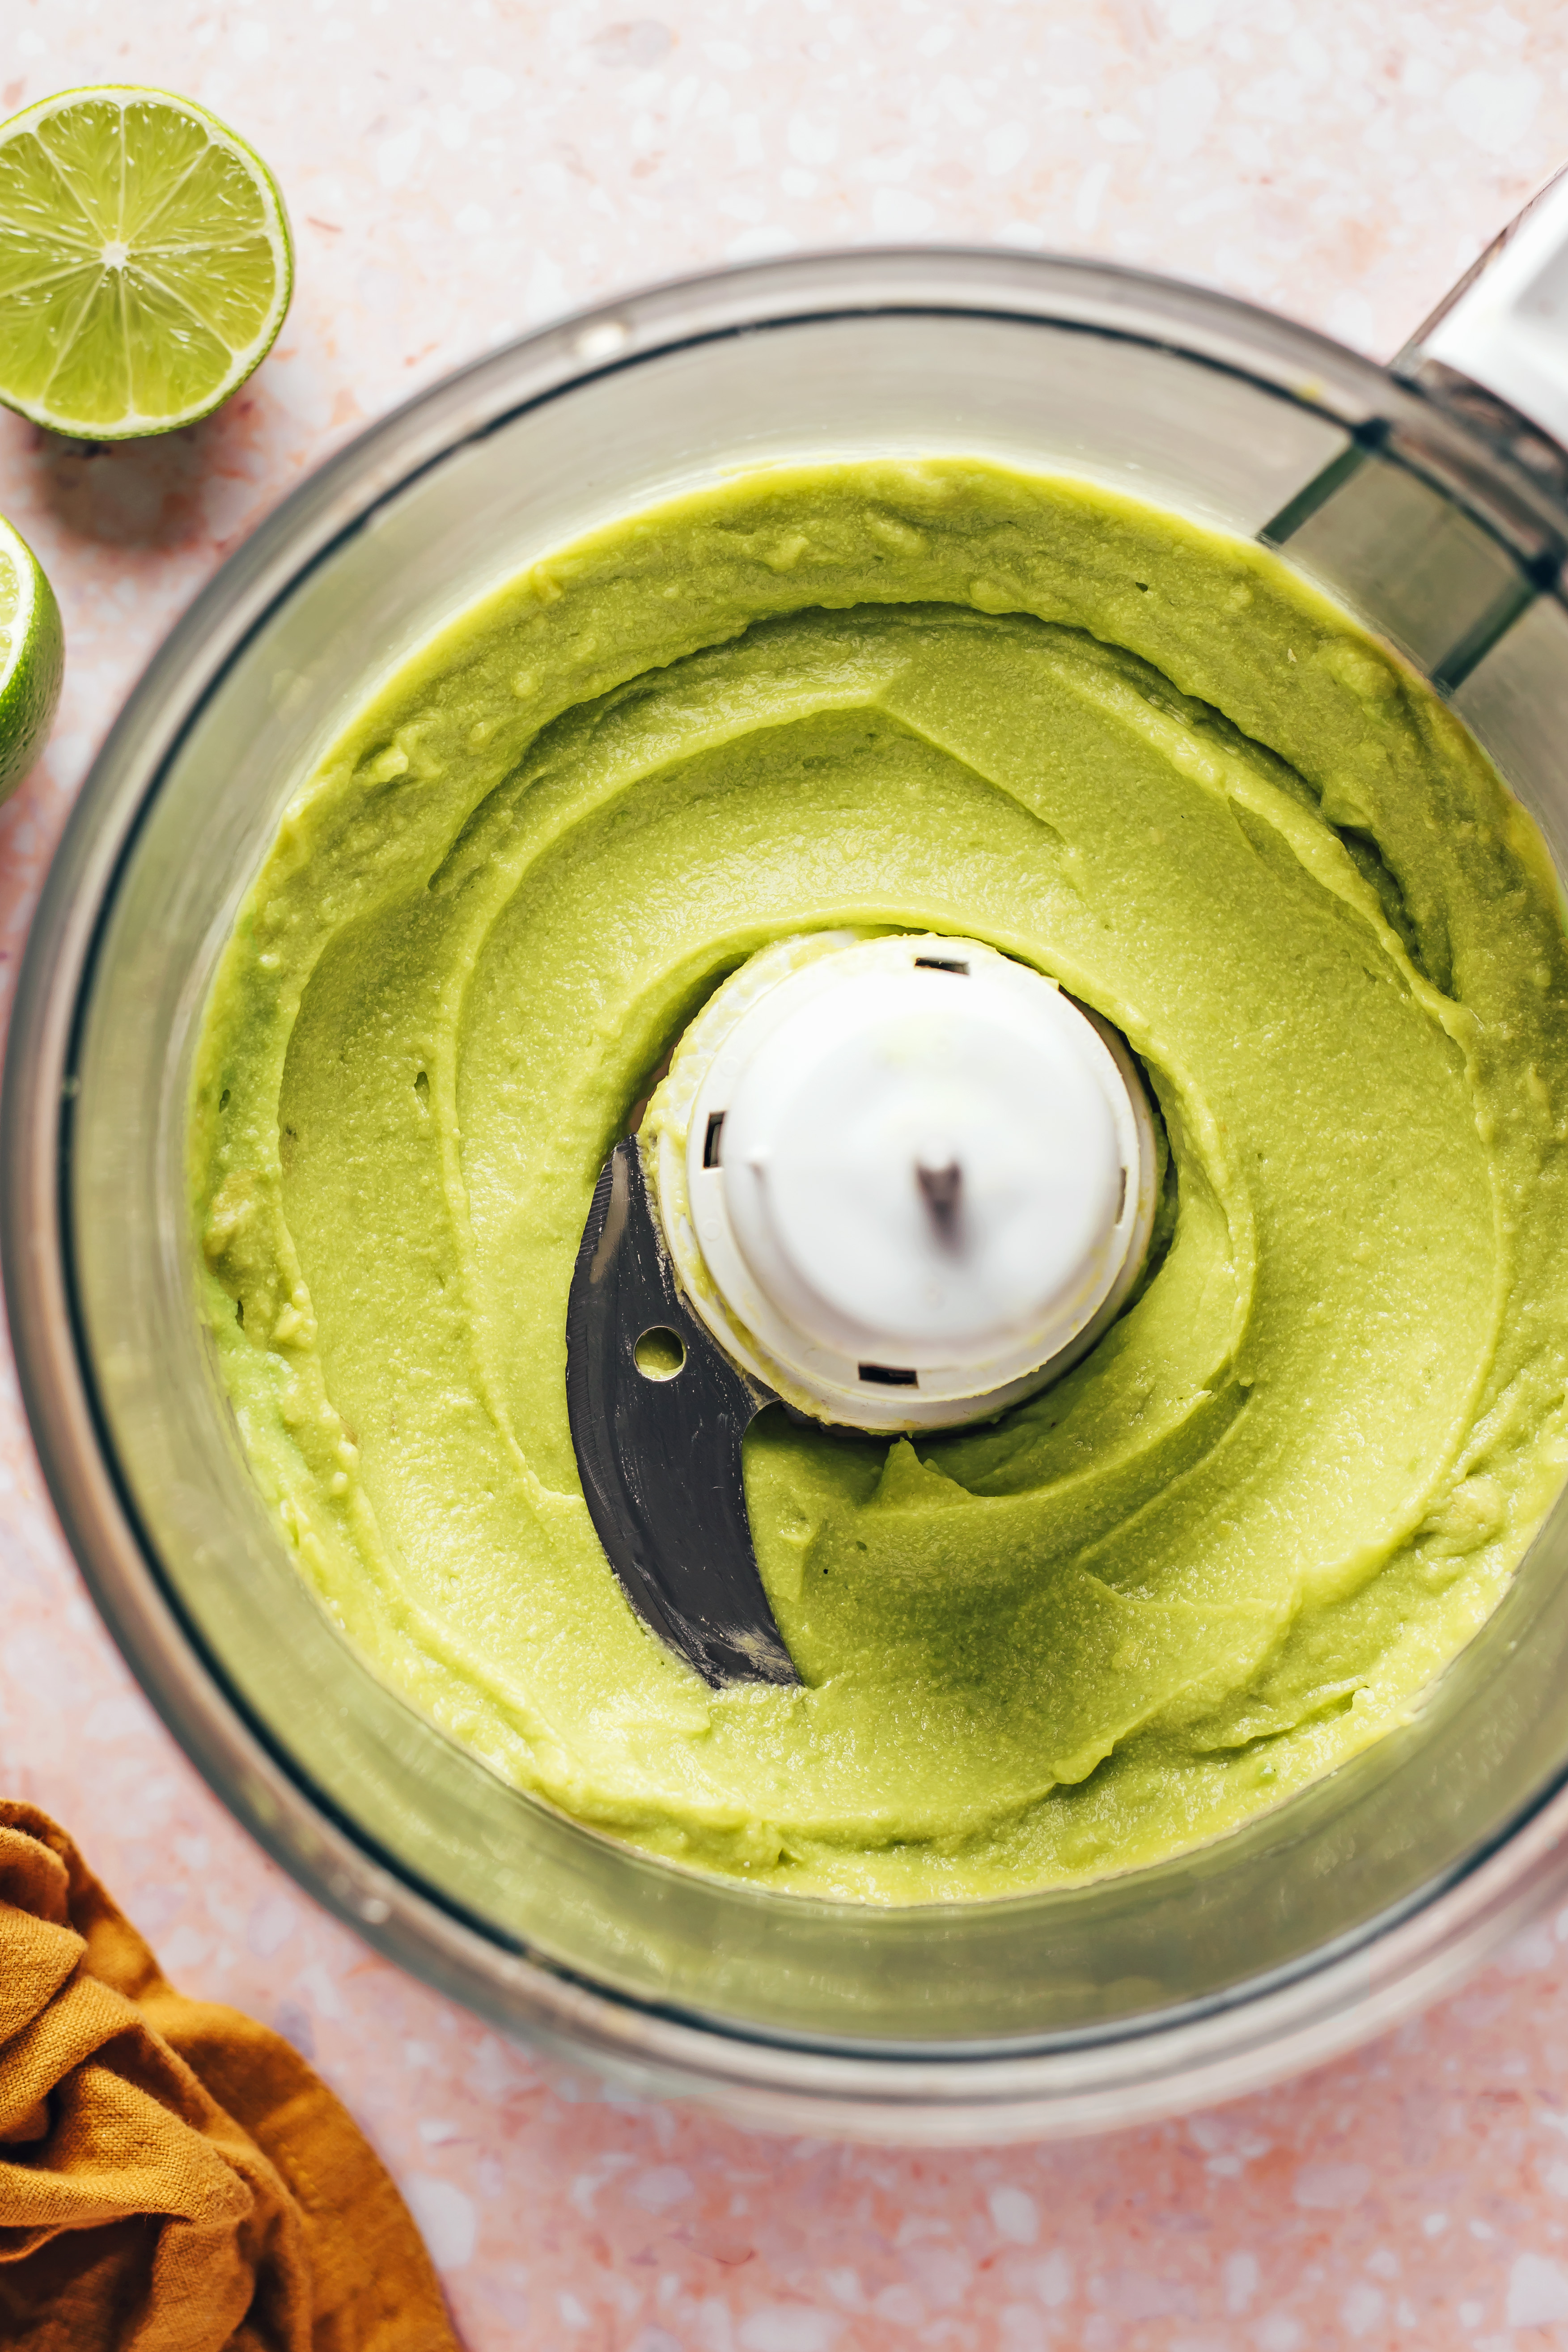 Pulse the creamy vegan avocado in a food processor